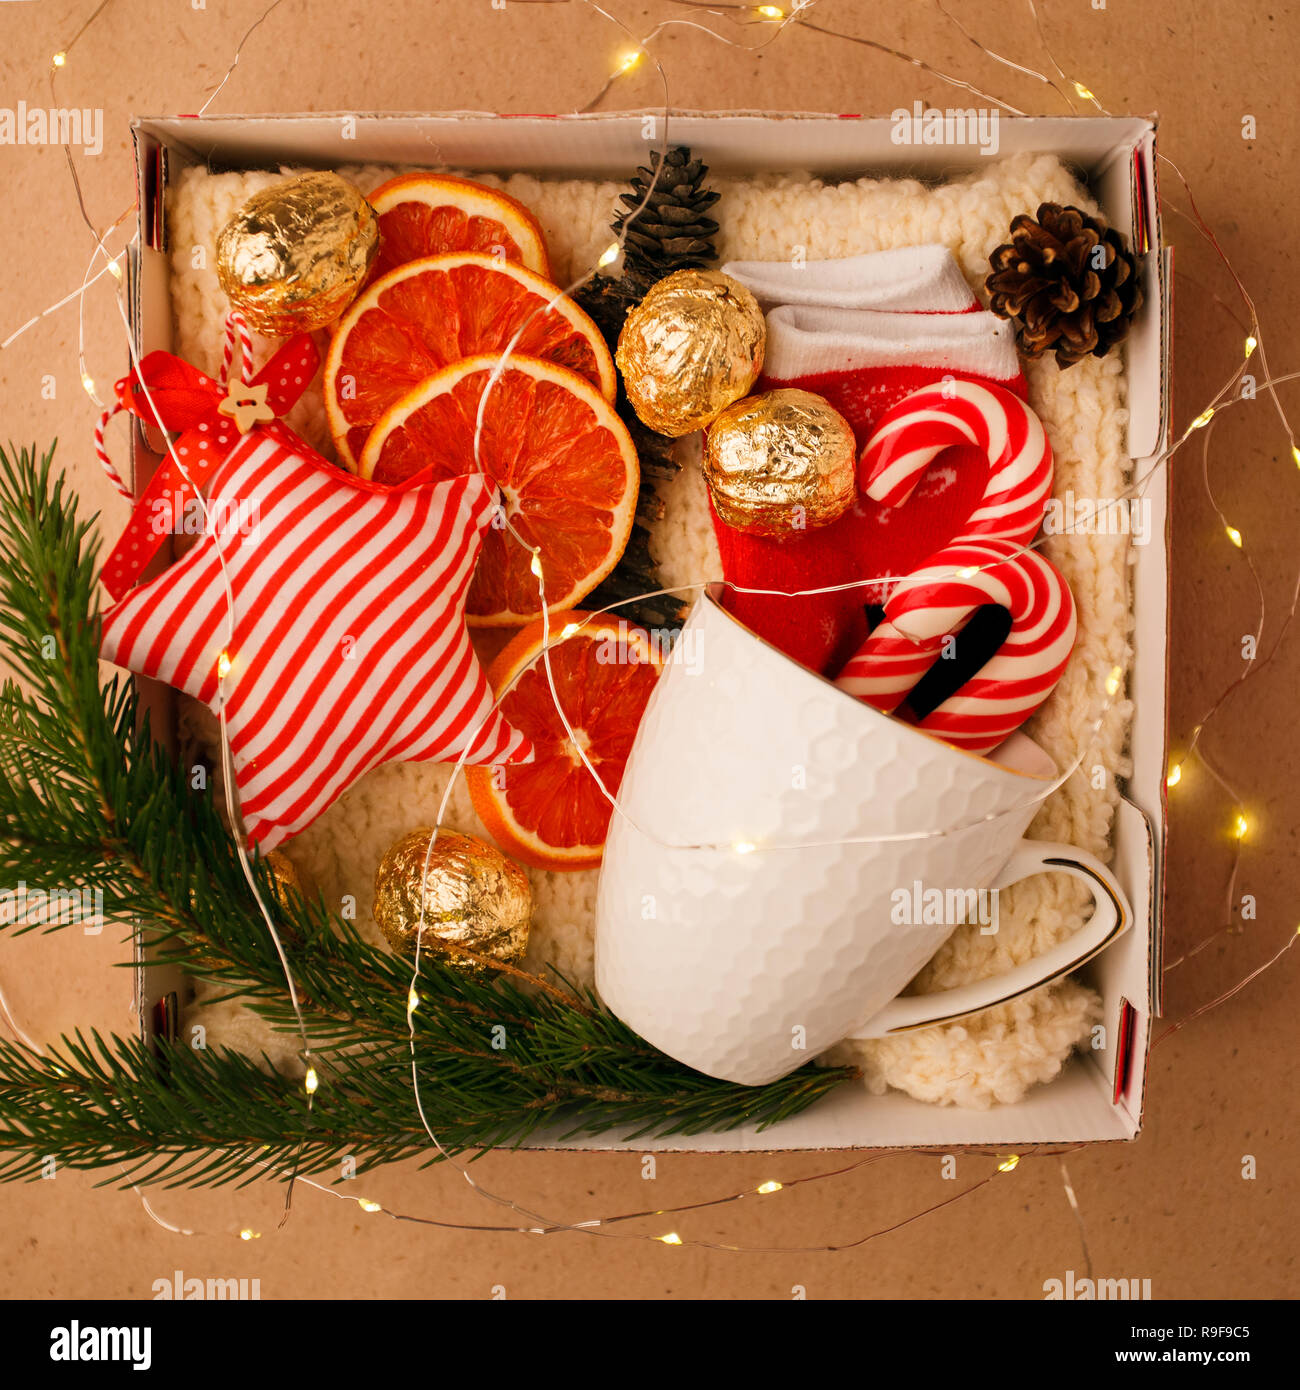 Eine persönliche Box mit Geschenke für Weihnachten und das neue Jahr, eine Reihe von süßen Sachen, traditionelle Spezialitäten und Dekor, eine einfache Idee für ein schönes Geschenk für Familie Stockfoto